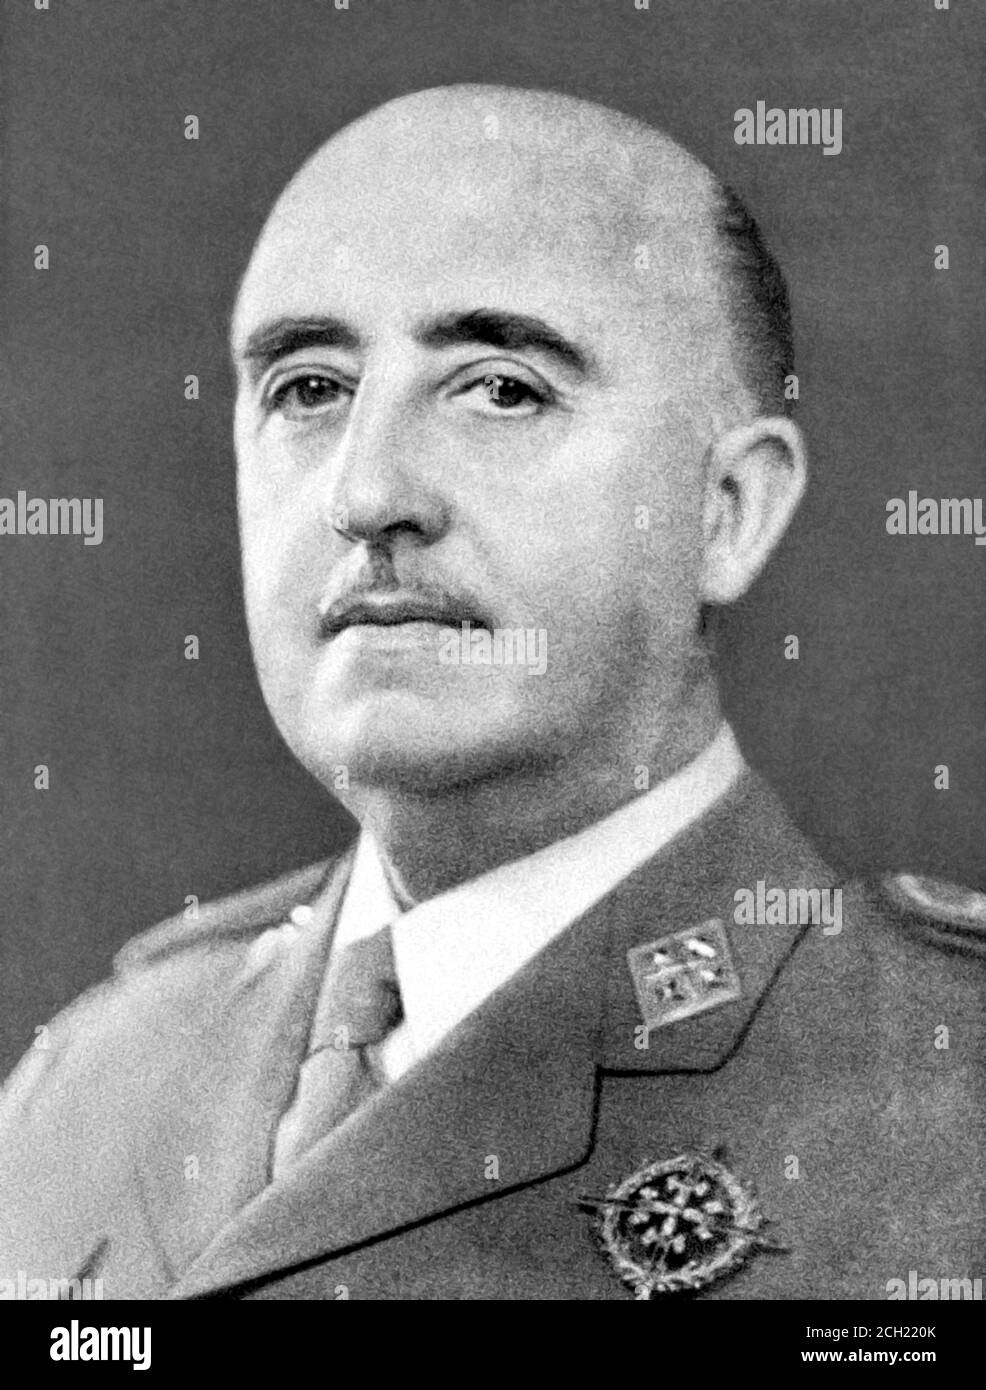 Francisco Franco. Retrato del General Francisco Franco Bahamonde (1892-1975) Foto de stock